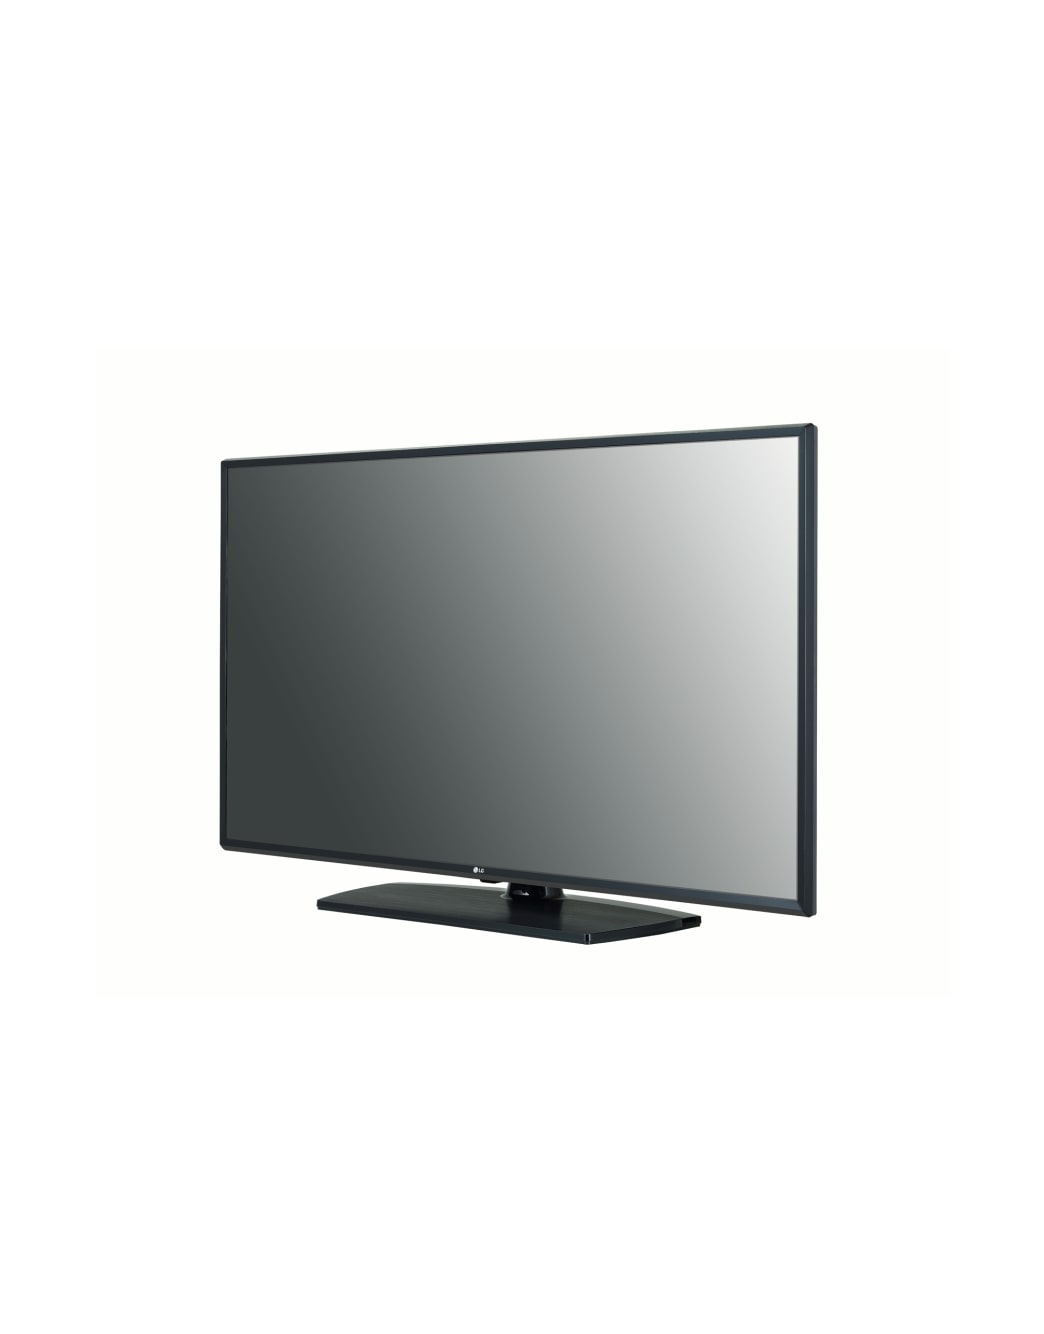 LG 55UT340H9 55" Commercial Grade 4K UHD LED TV Front View Alternate